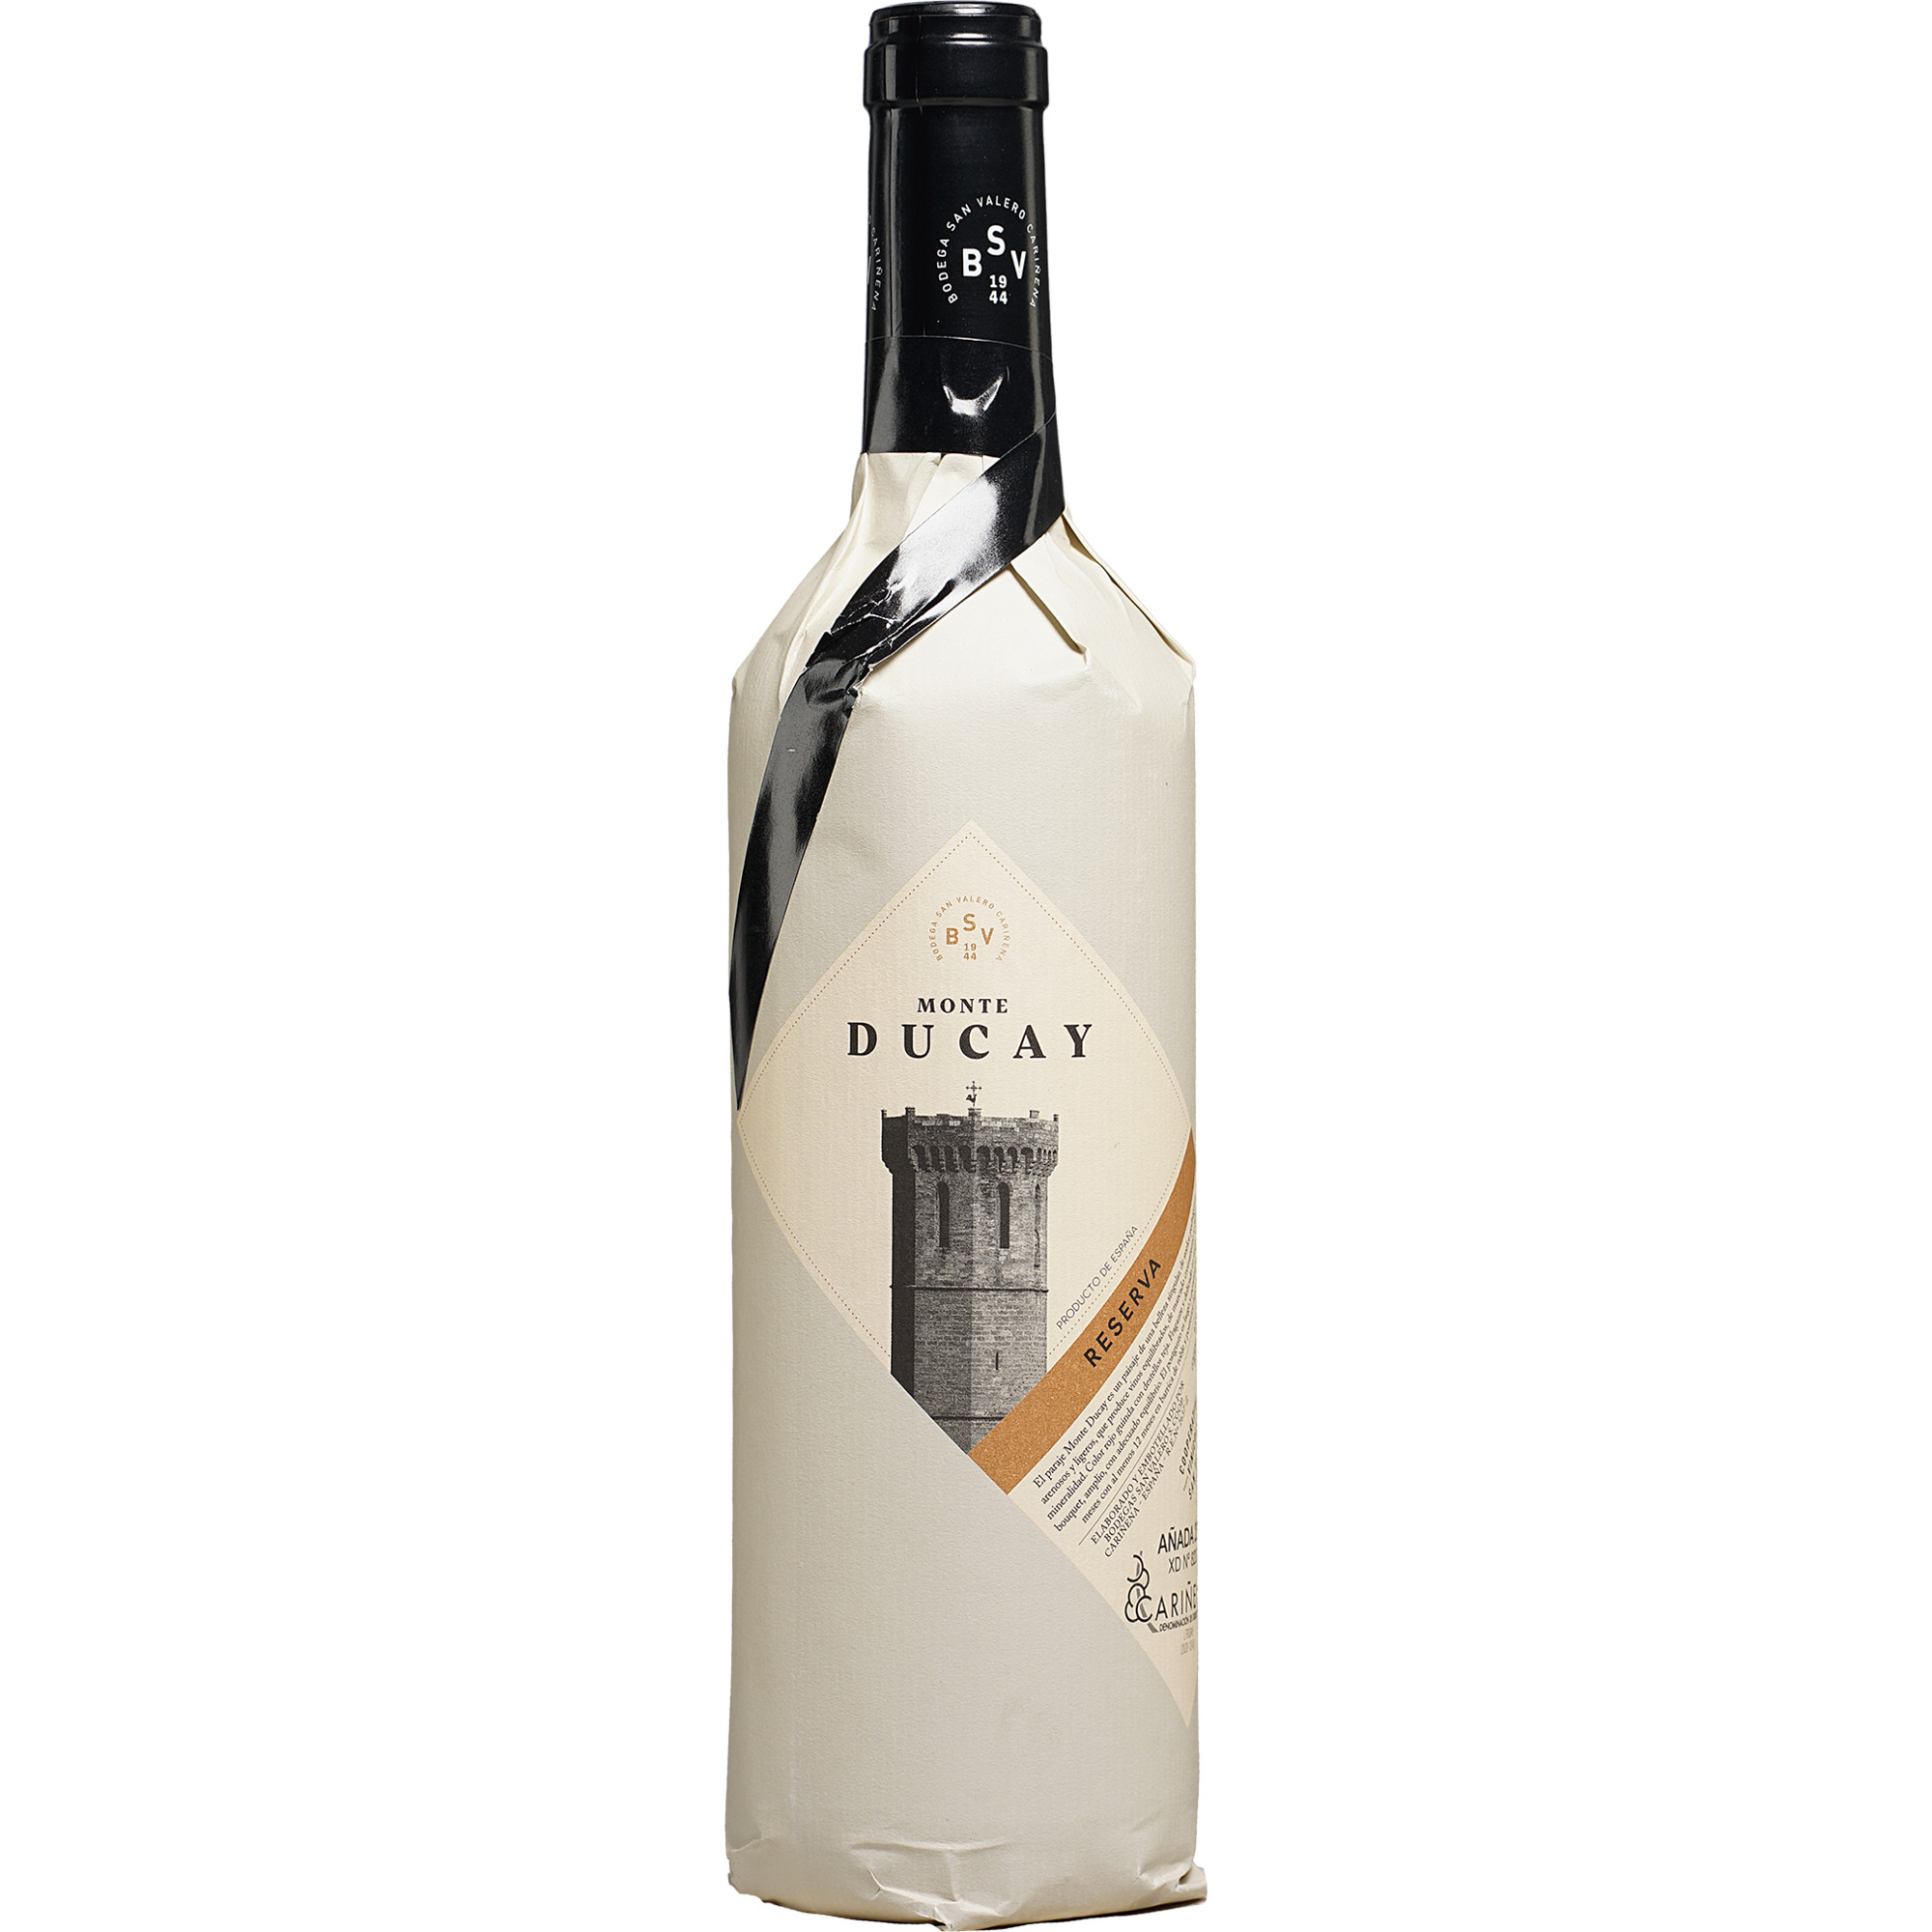 - Preis Trebbiano besten trocken, Sasseta Bianco den Toscana Spirituosen di & Weißwein IGT 2021 für Finde Wein Duca